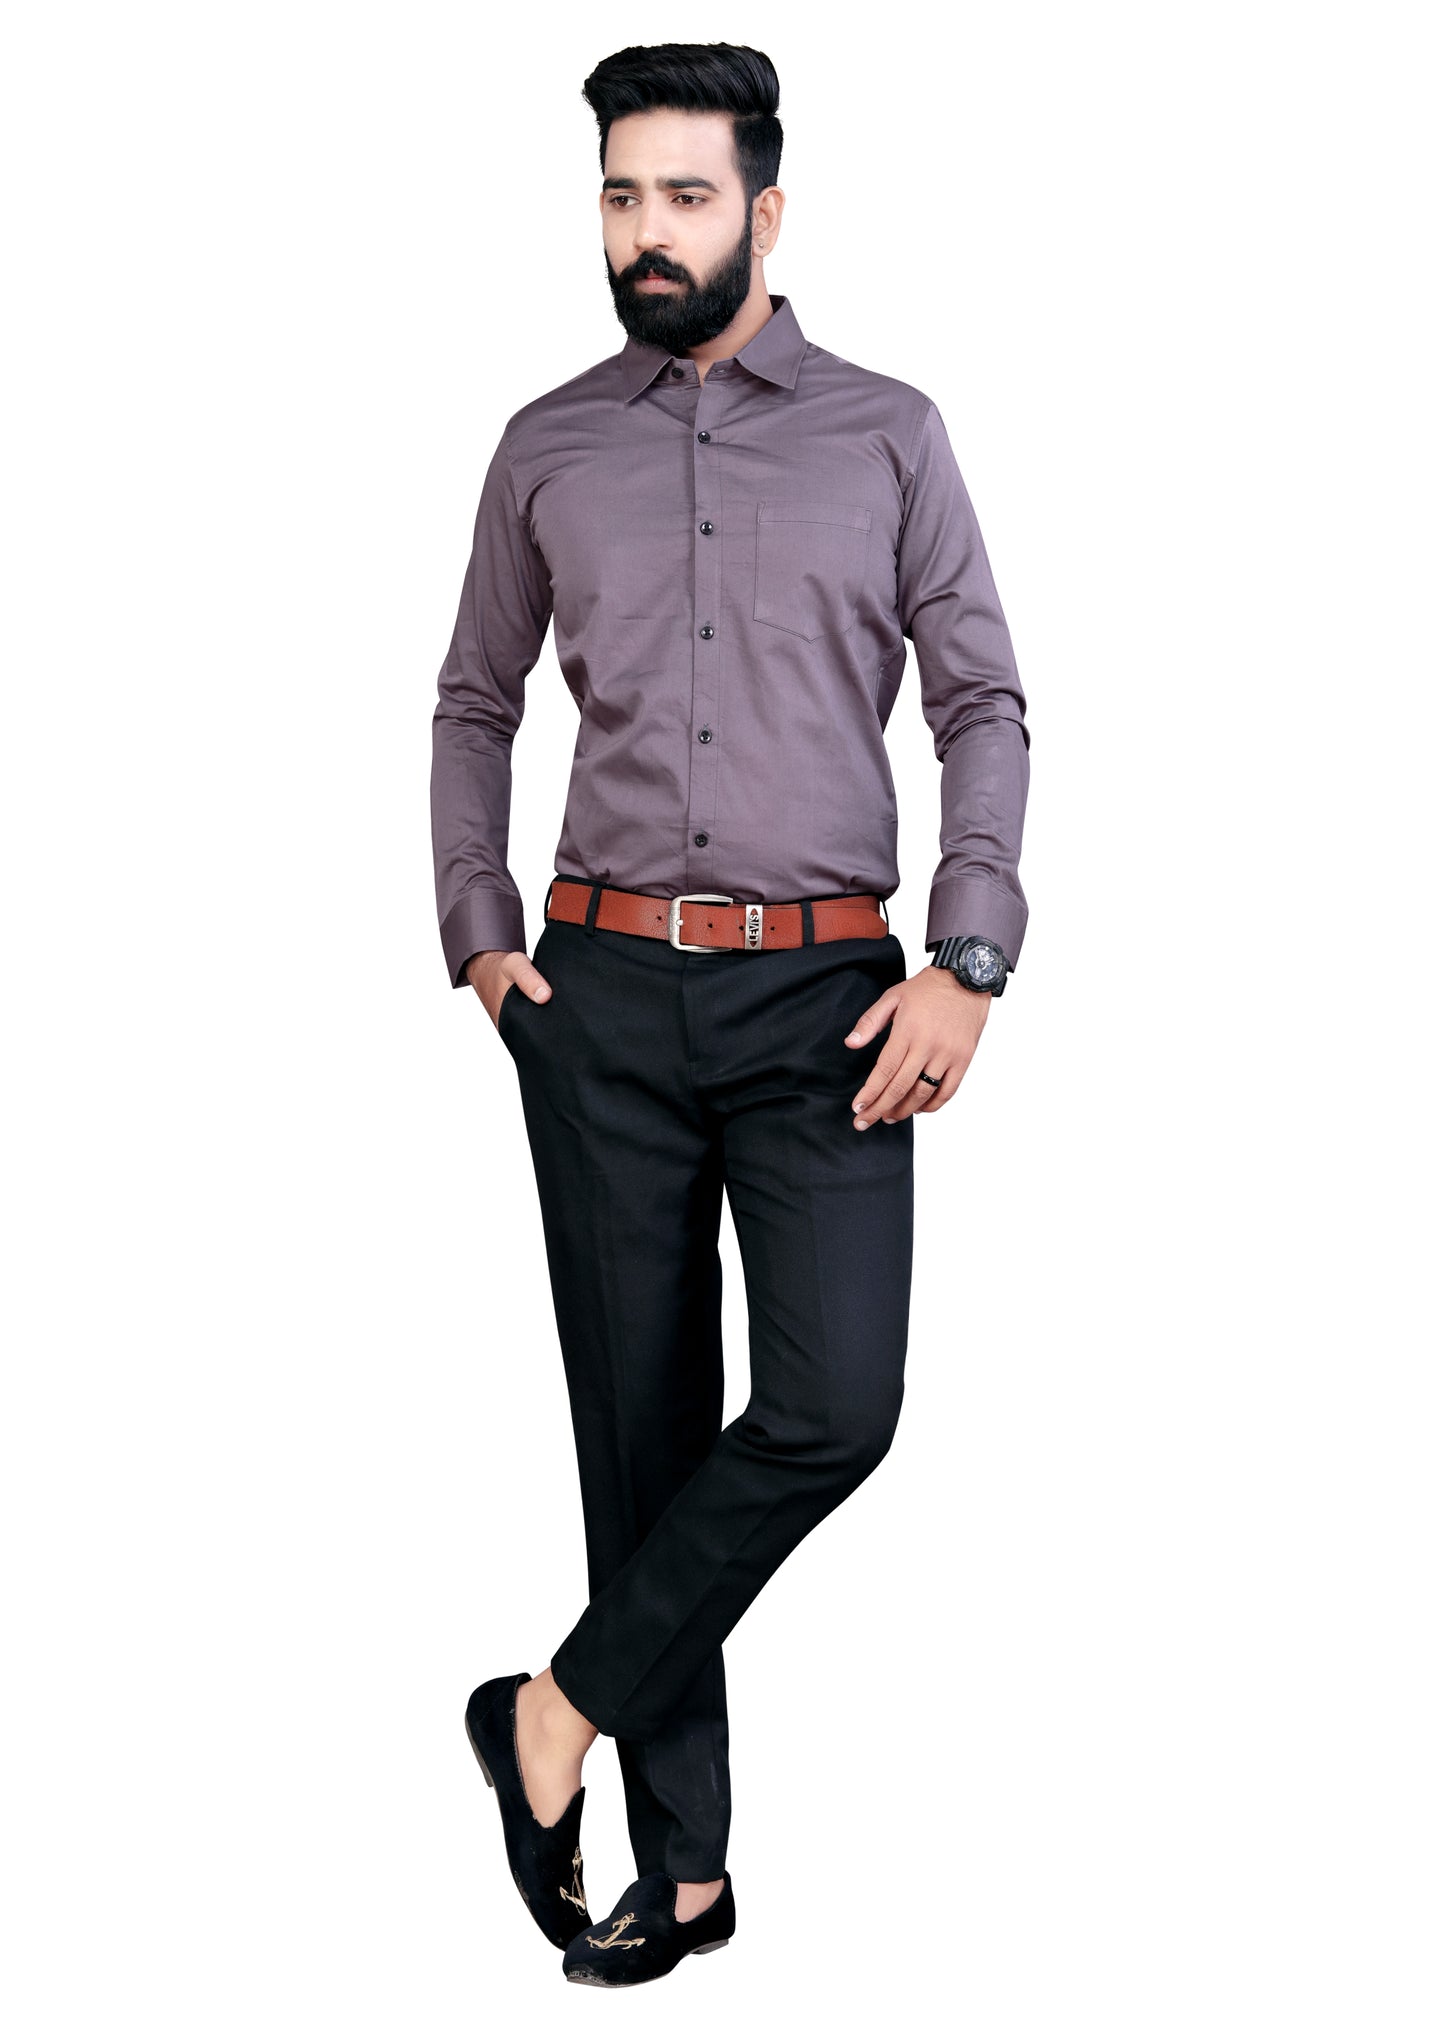 Thistle Purple Plain Formal Cotton Shirt